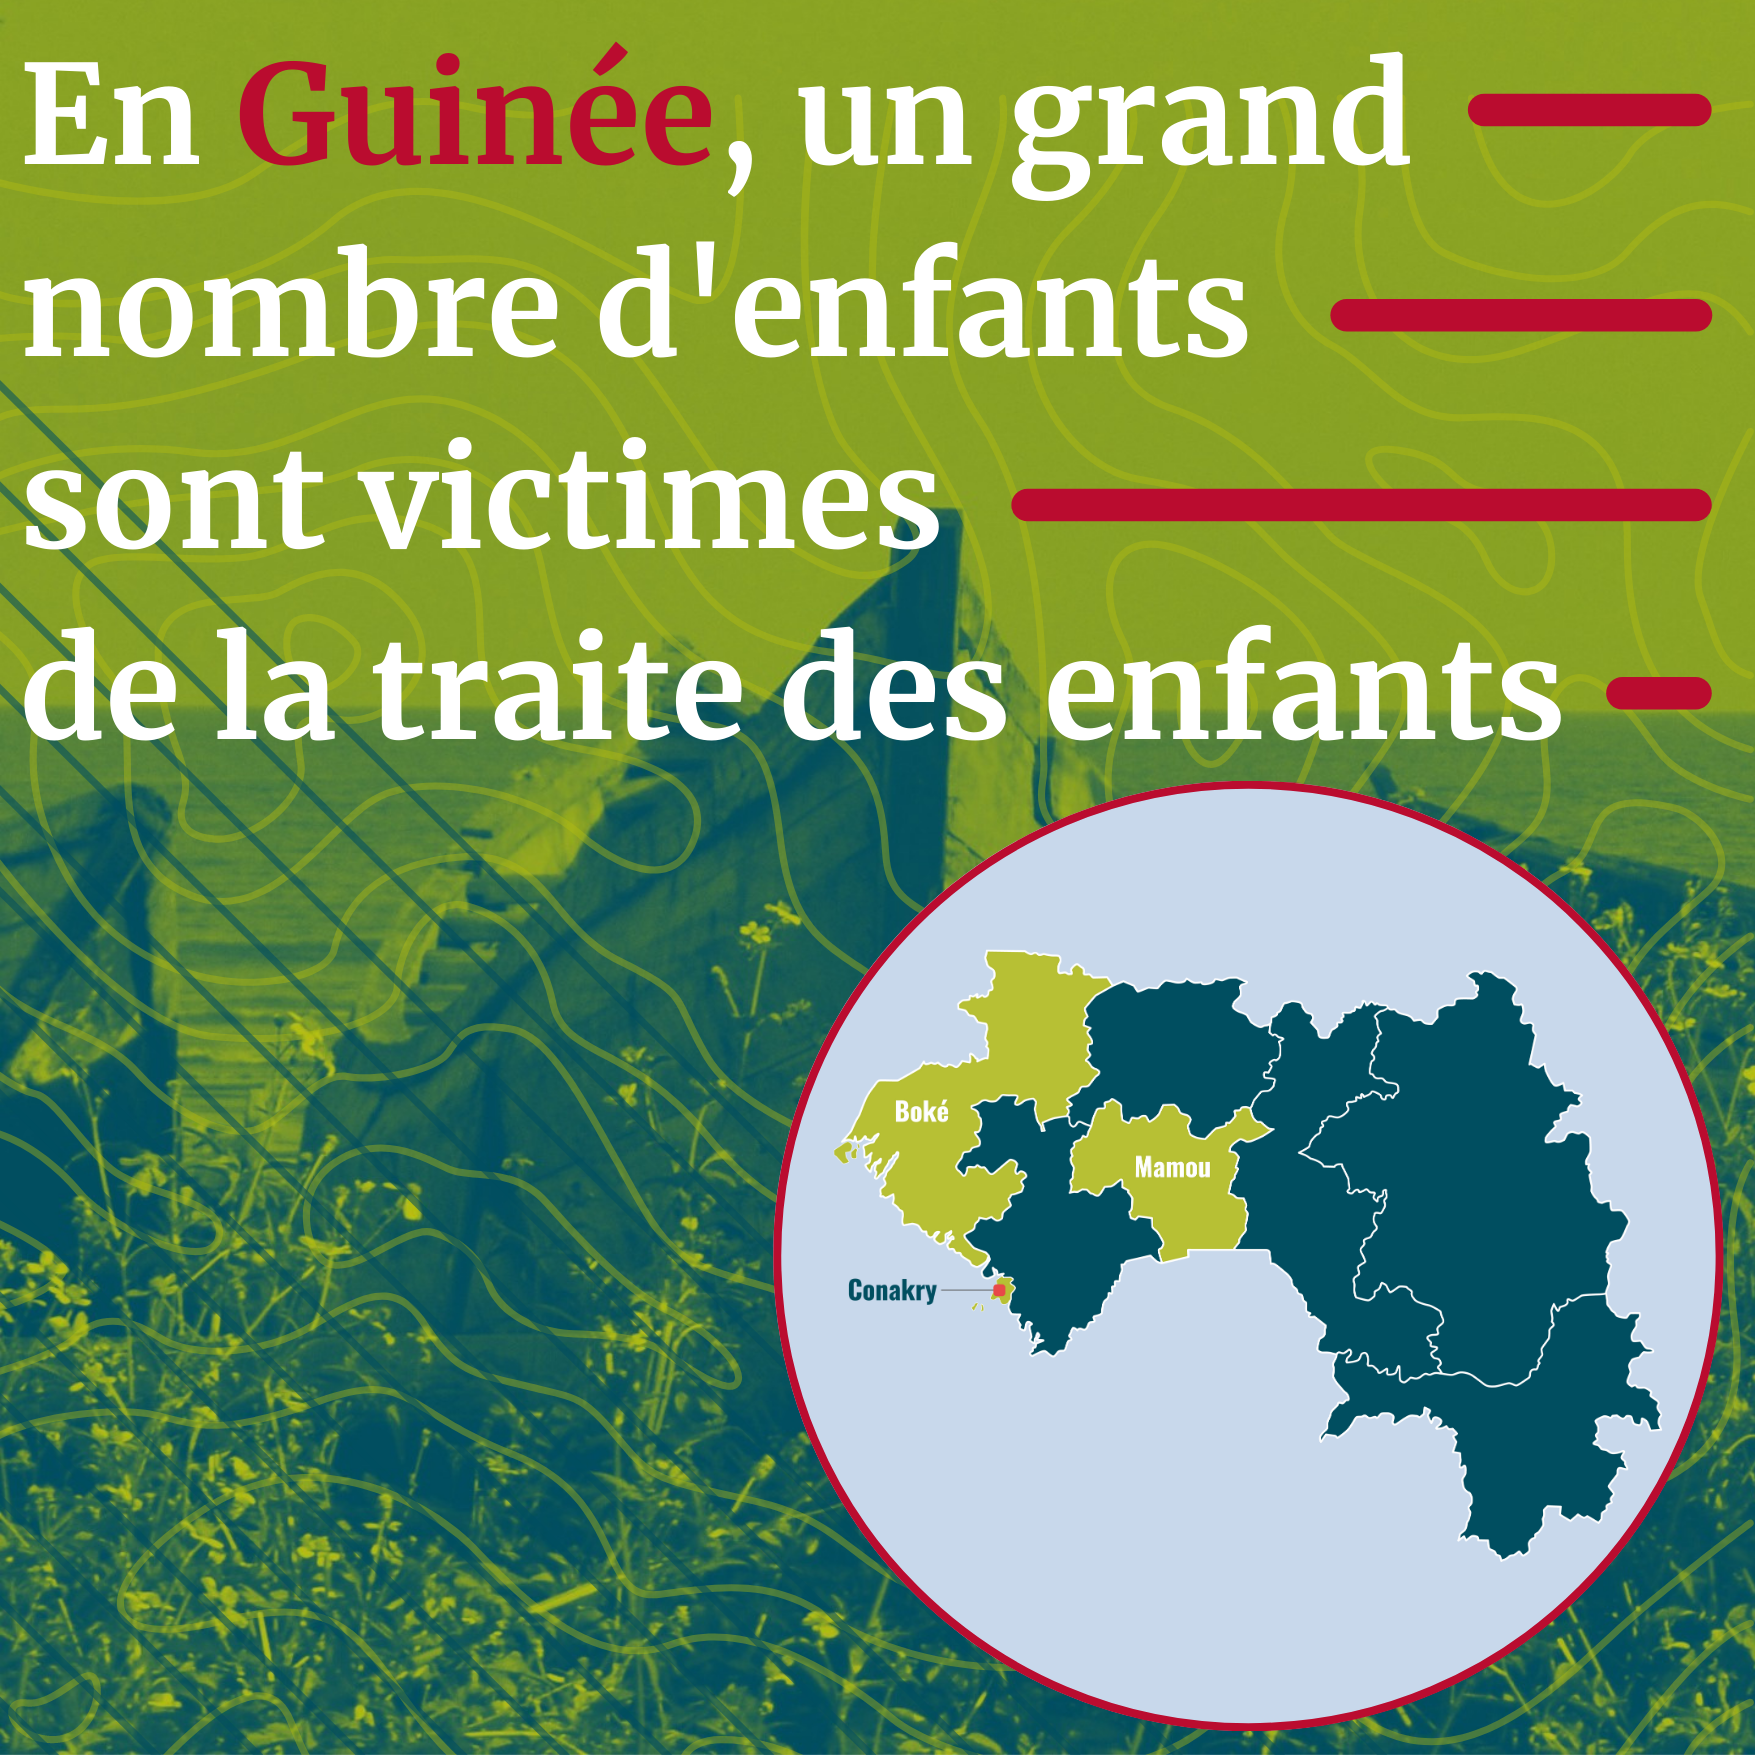 Guinea Baseline French